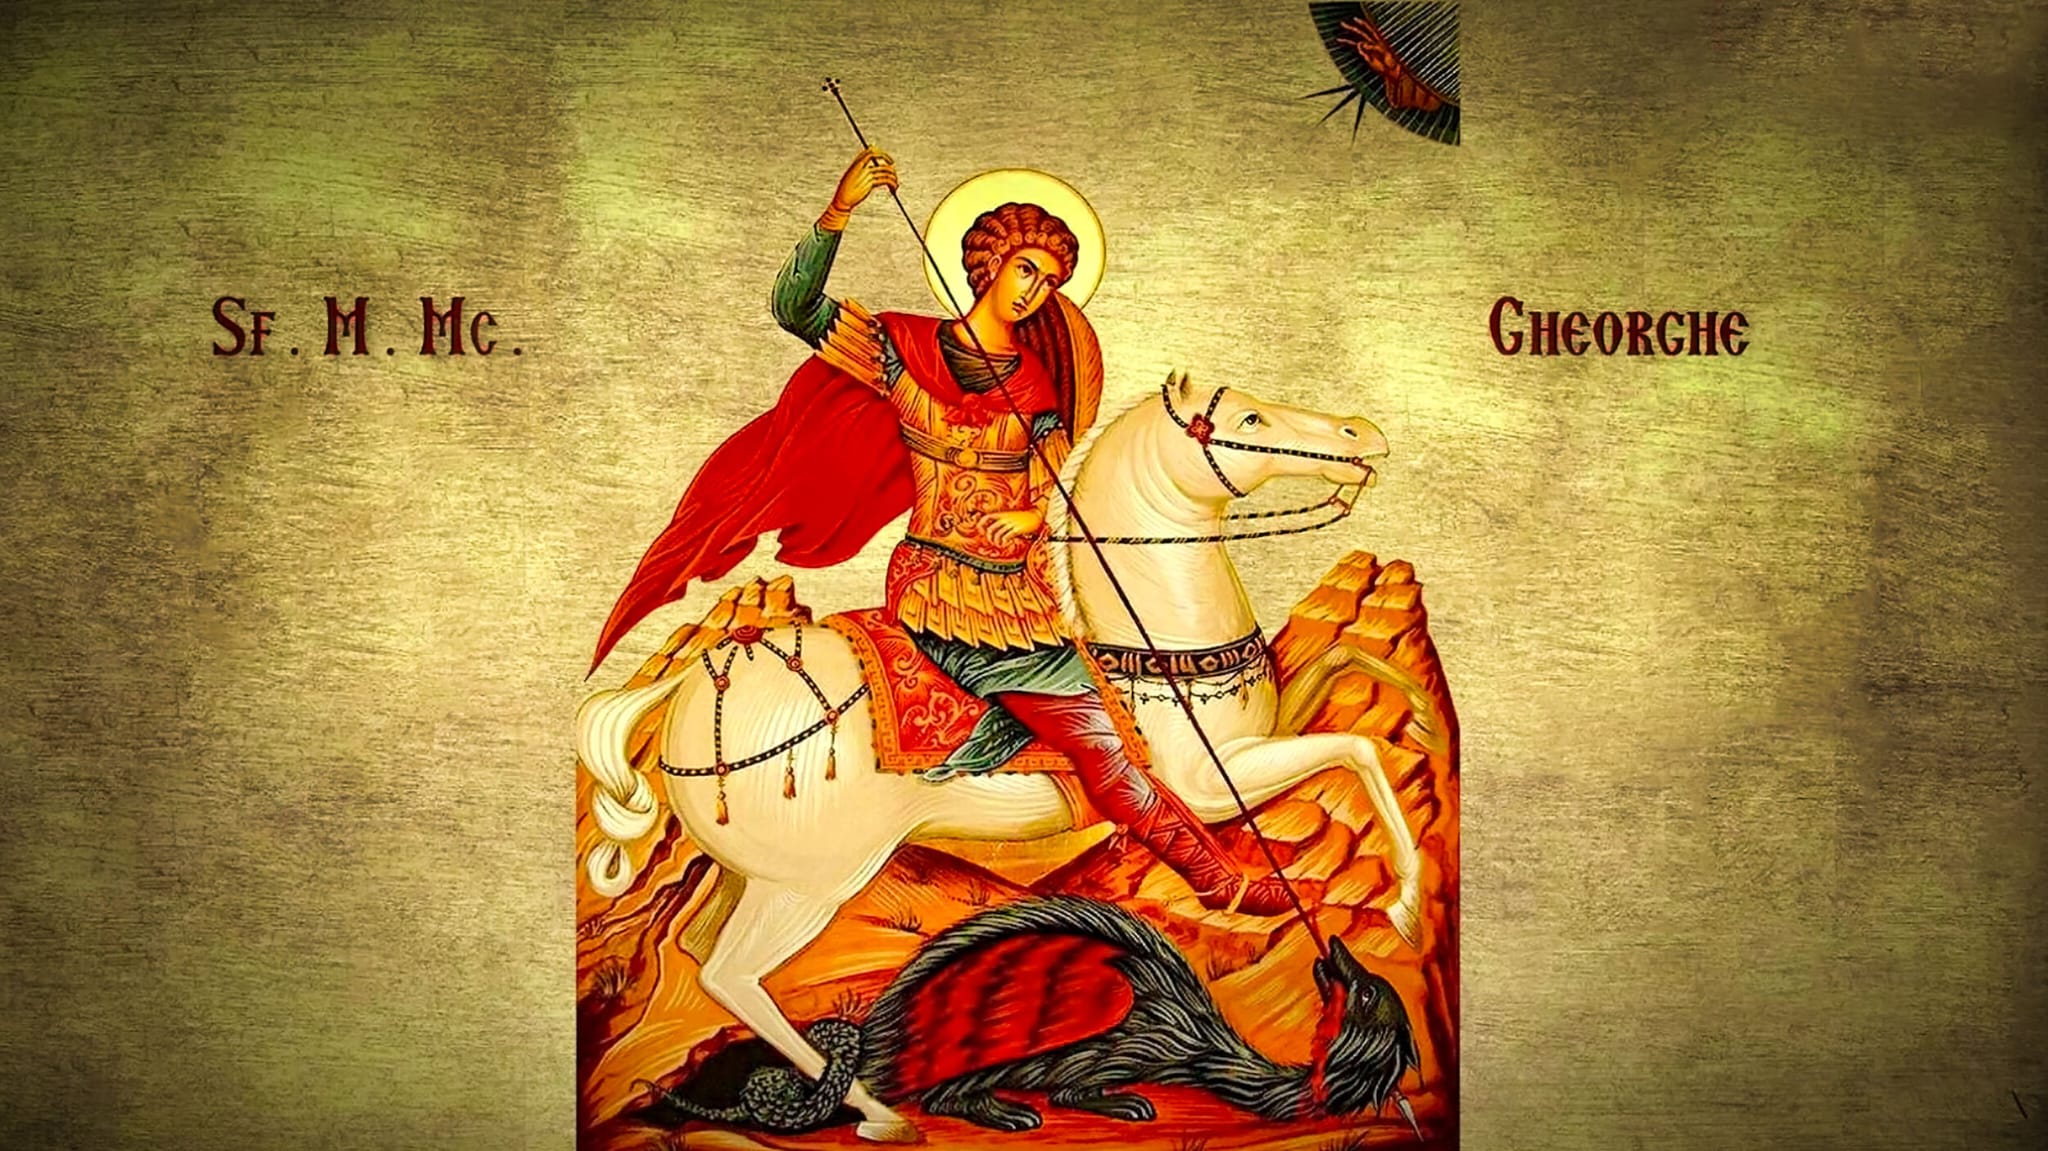 23 aprilie – Sfântul Mare Mucenic Gheorghe, unul dintre cei mai importanți sfinți din Calendarul Creştin Ortodox. Cui îi poți spune ”La mulți ani” în această zi